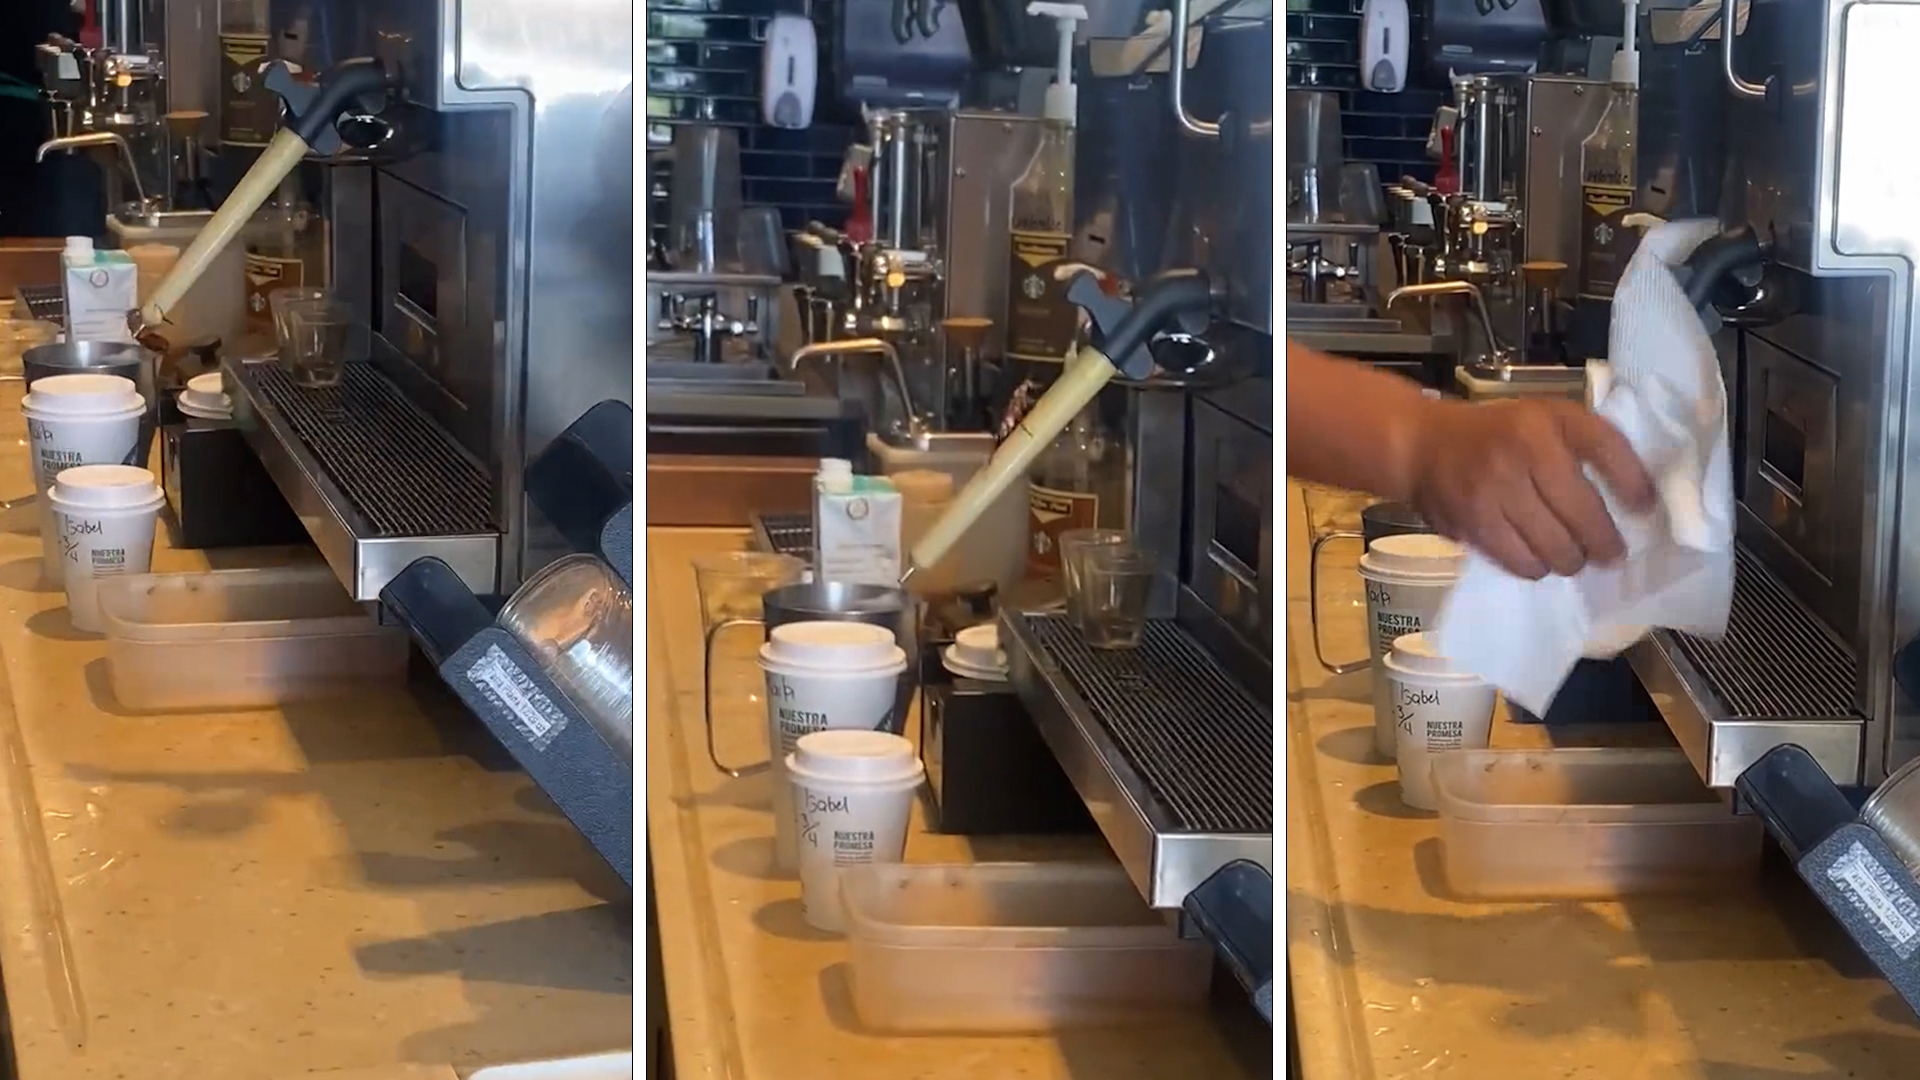 ¡Qué asco!: una cucaracha fue grabada en una cafetería en Cancún y los viajeros explotaron en redes sociales 